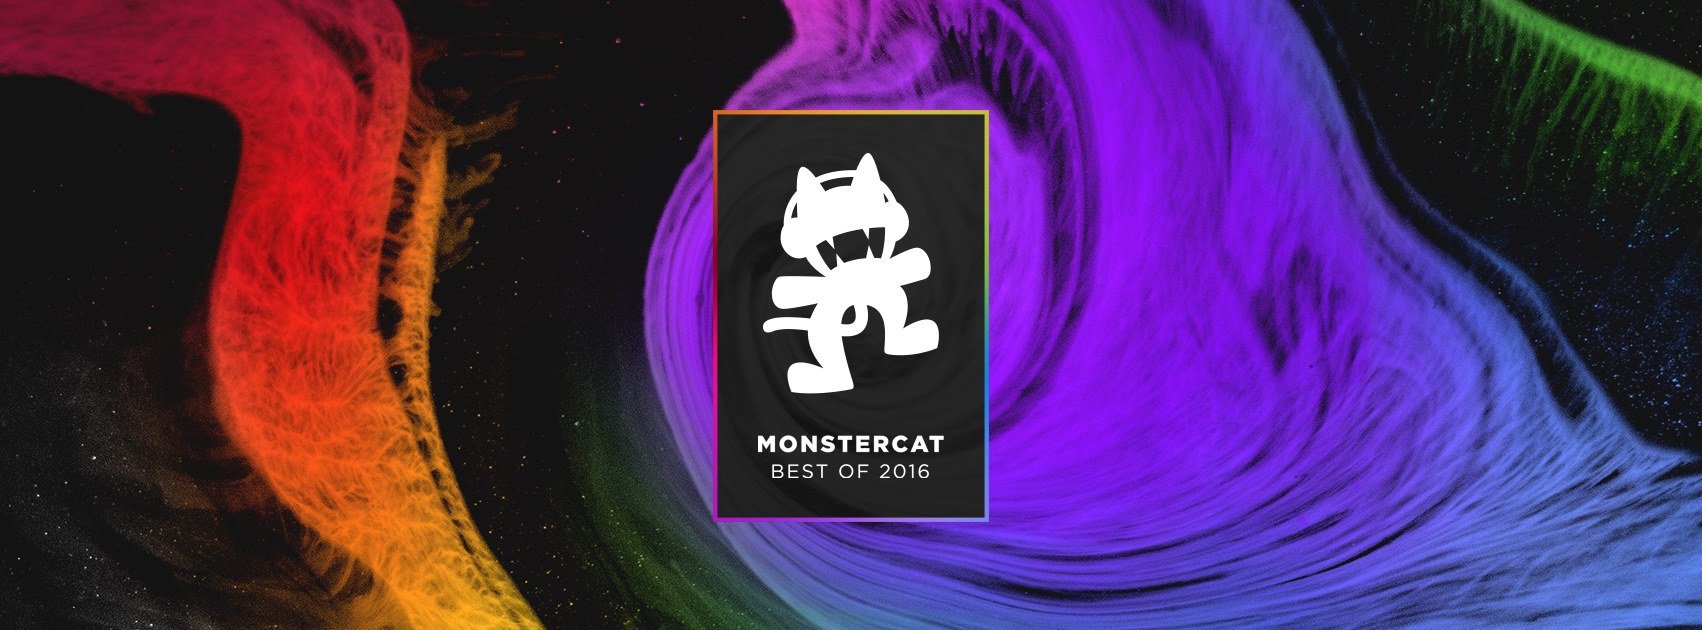 Monstercat Best of 2016